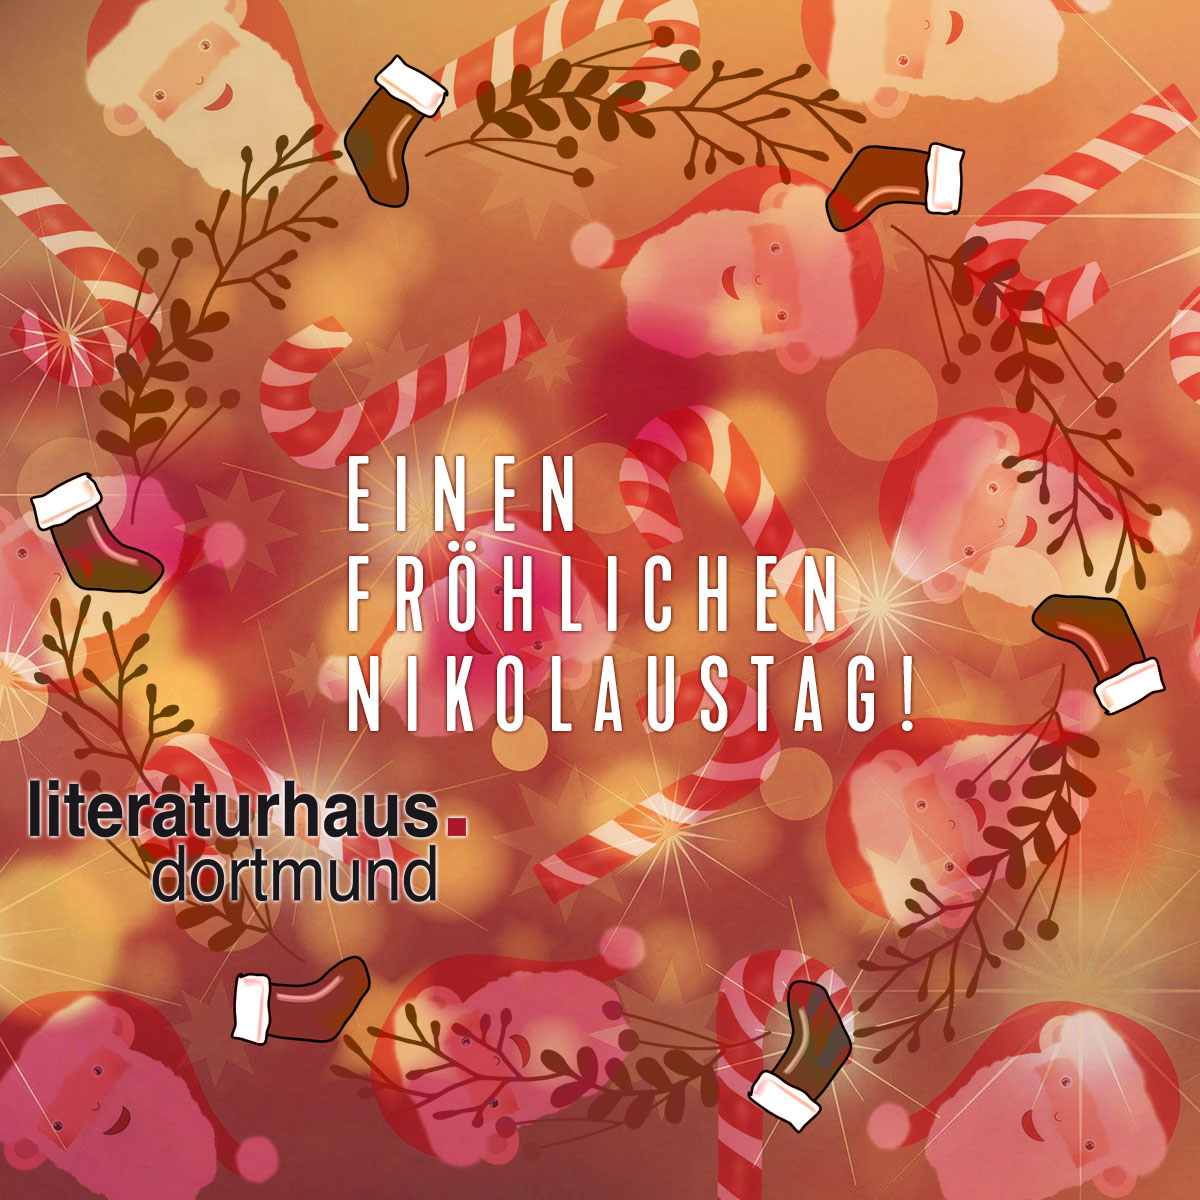 Featured image for “Einen fröhlichen Nikolaustag!”